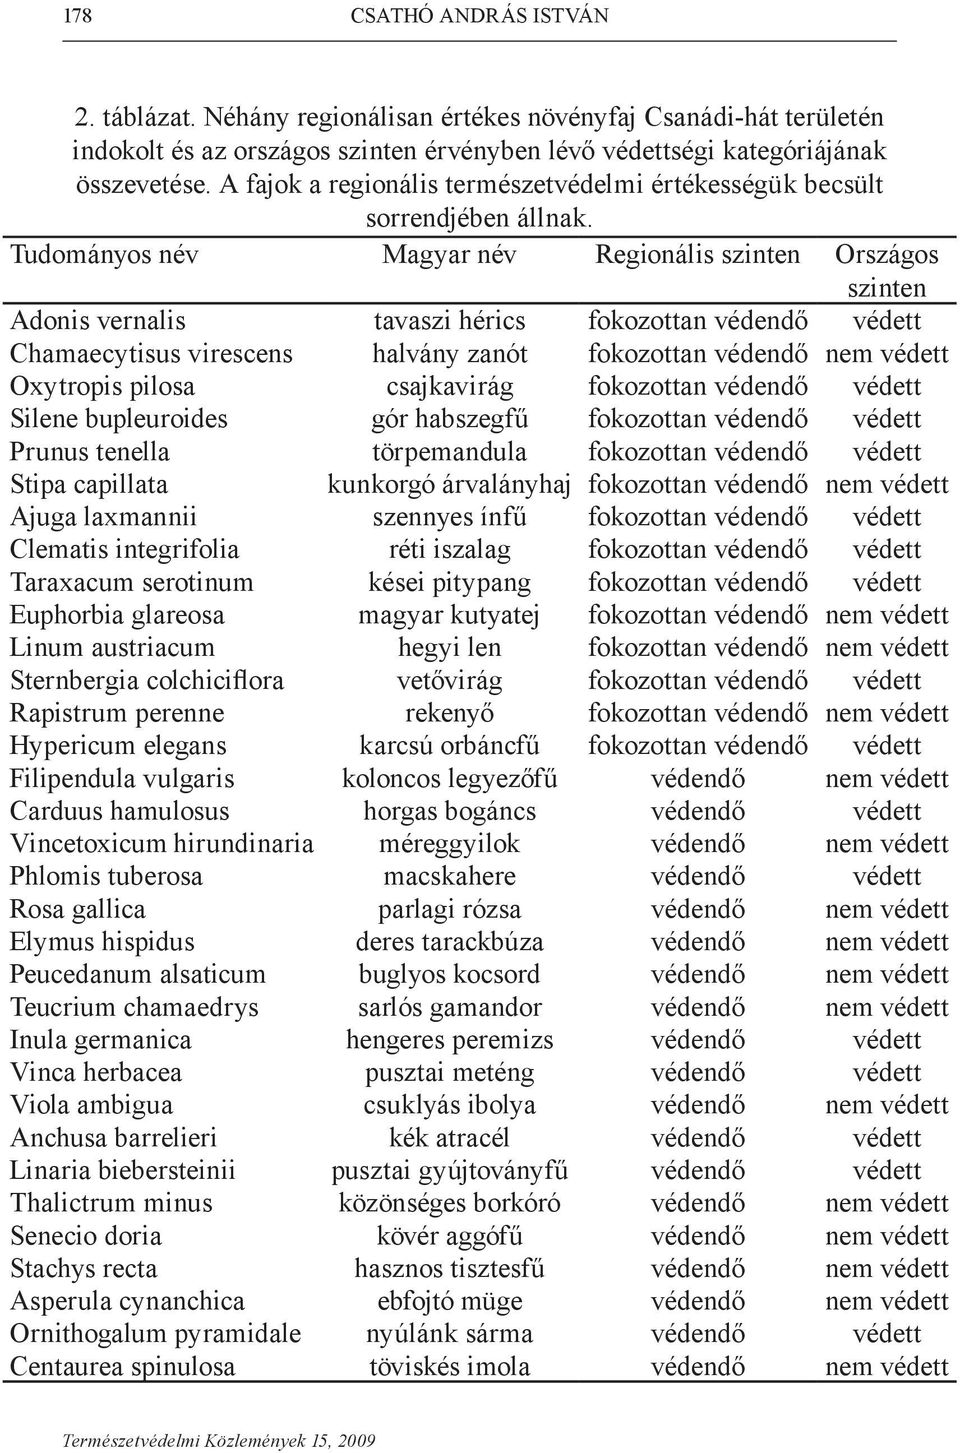 Tudományos név Magyar név Regionális szinten Országos szinten Adonis vernalis tavaszi hérics fokozottan védendő védett Chamaecytisus virescens halvány zanót fokozottan védendő nem védett Oxytropis